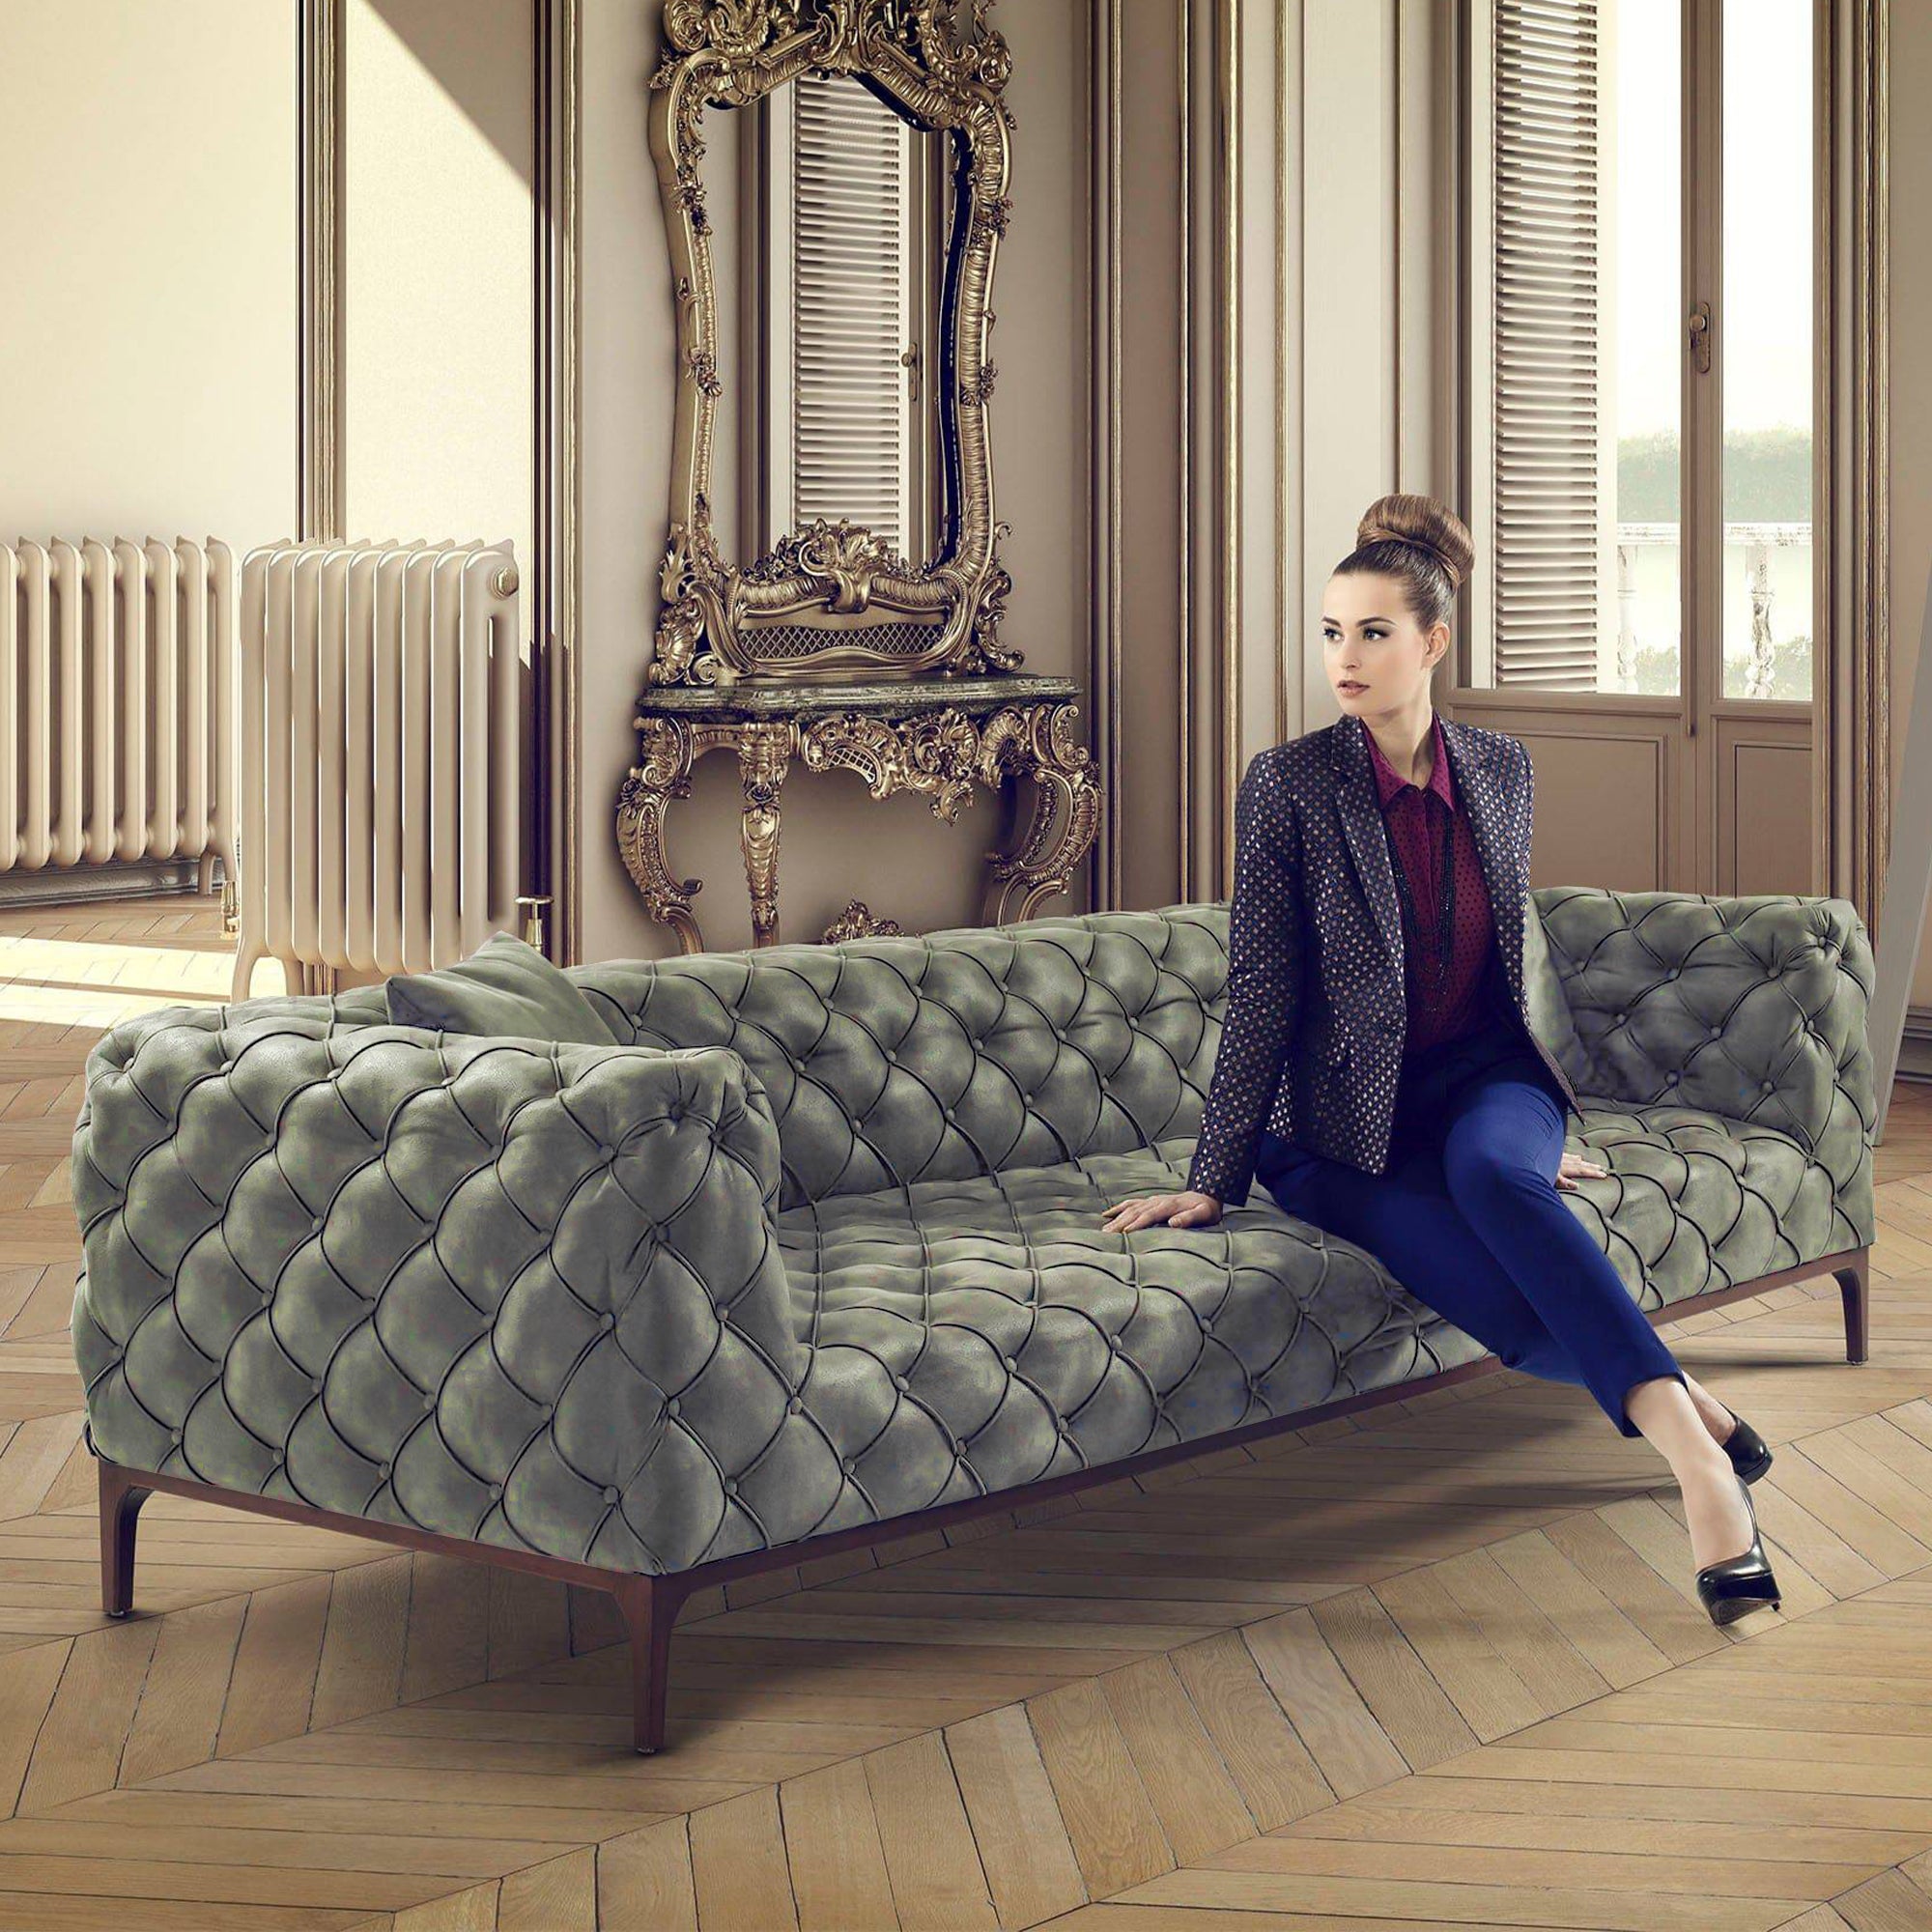 Fashion Sofa And 2 Cushions Fas002Gn -  Sofas | أريكة فاشون و 2 وسائد - ebarza Furniture UAE | Shop Modern Furniture in Abu Dhabi & Dubai - مفروشات ايبازرا في الامارات | تسوق اثاث عصري وديكورات مميزة في دبي وابوظبي